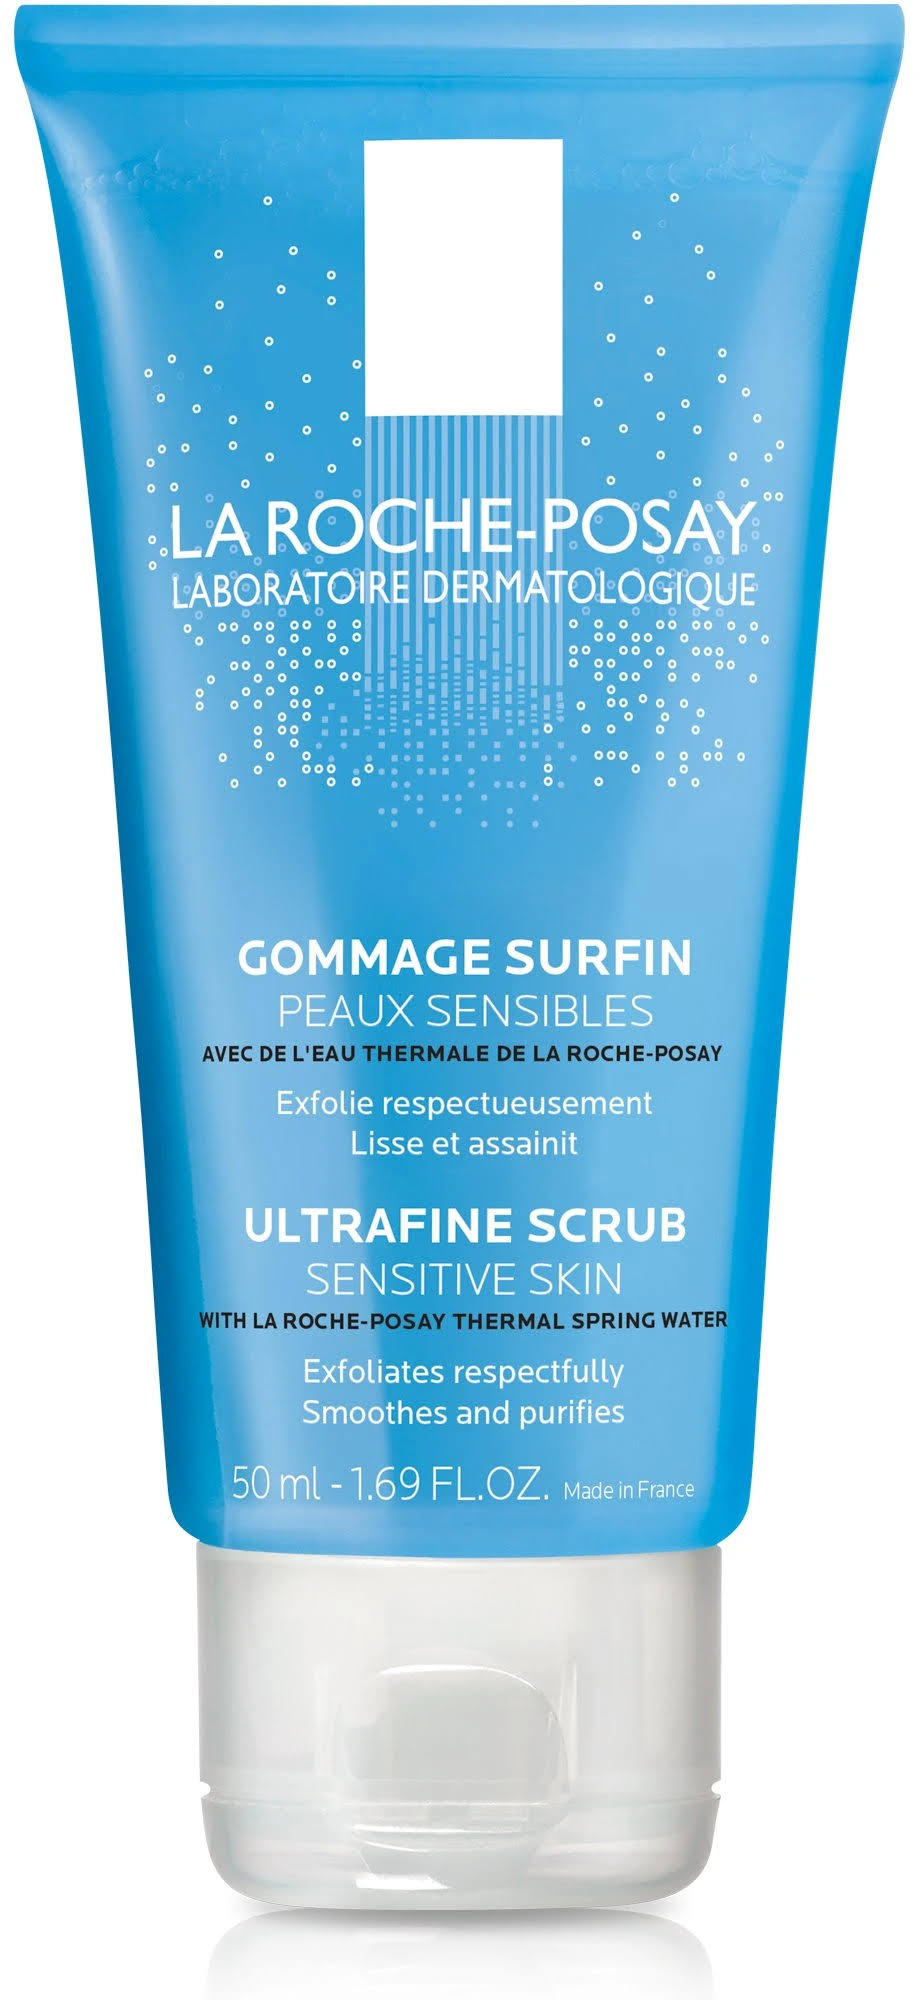 La Roche-Posay Ultra Fine Scrub - Sensitive Skin, 50ml